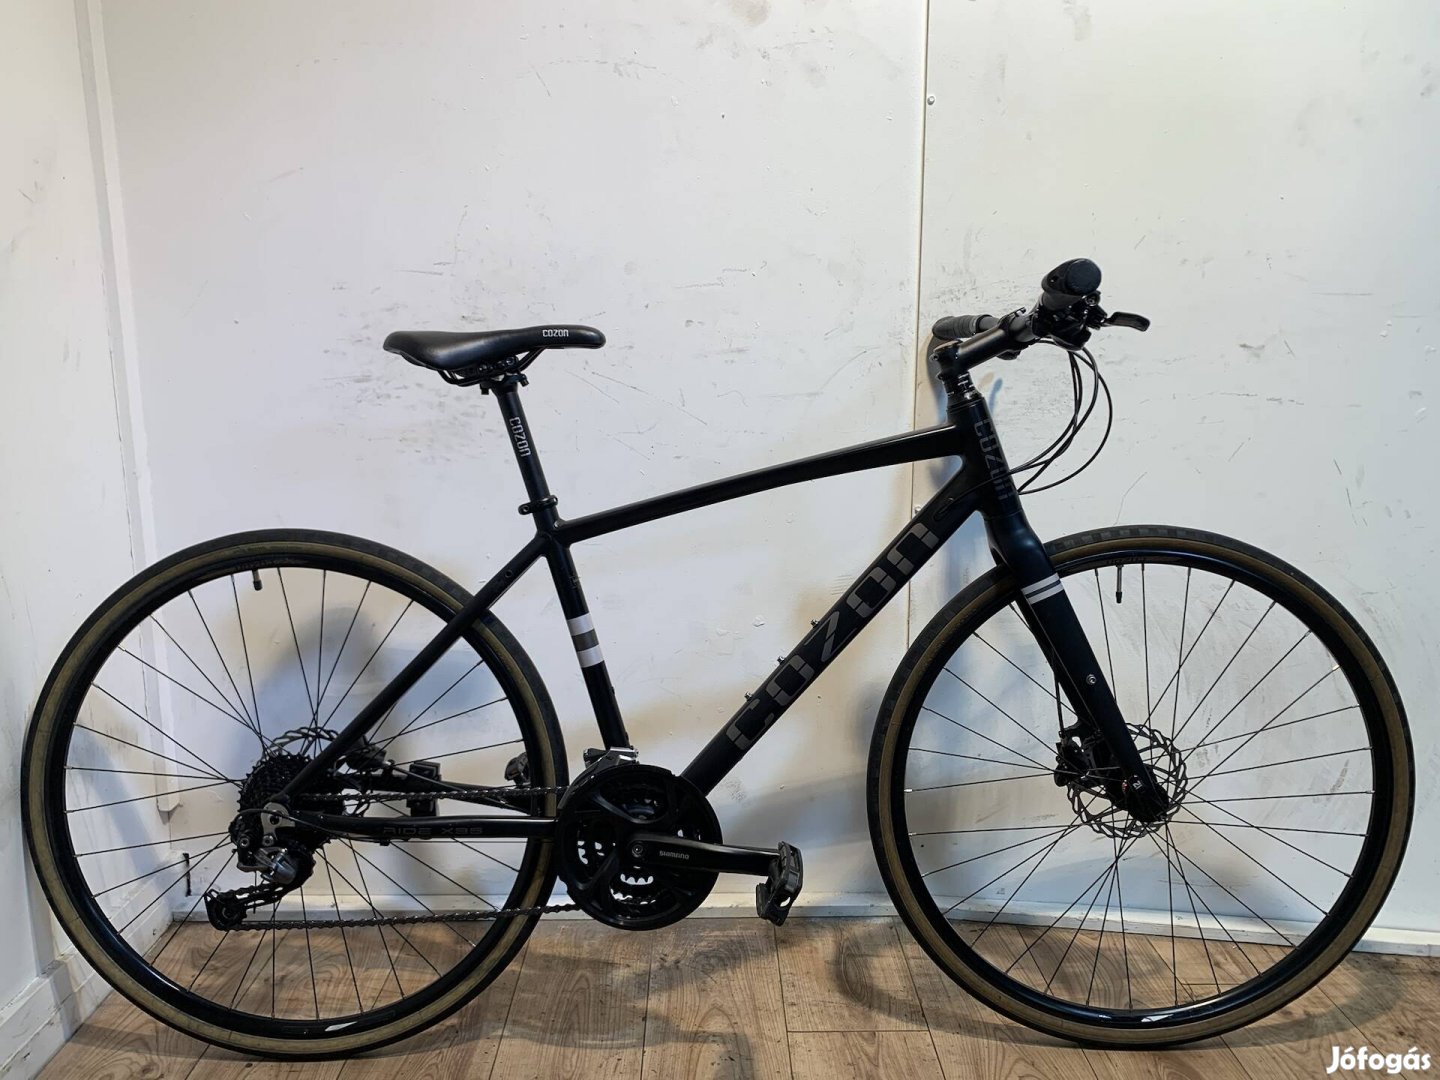 Cozon Ride X3S kerékpár.